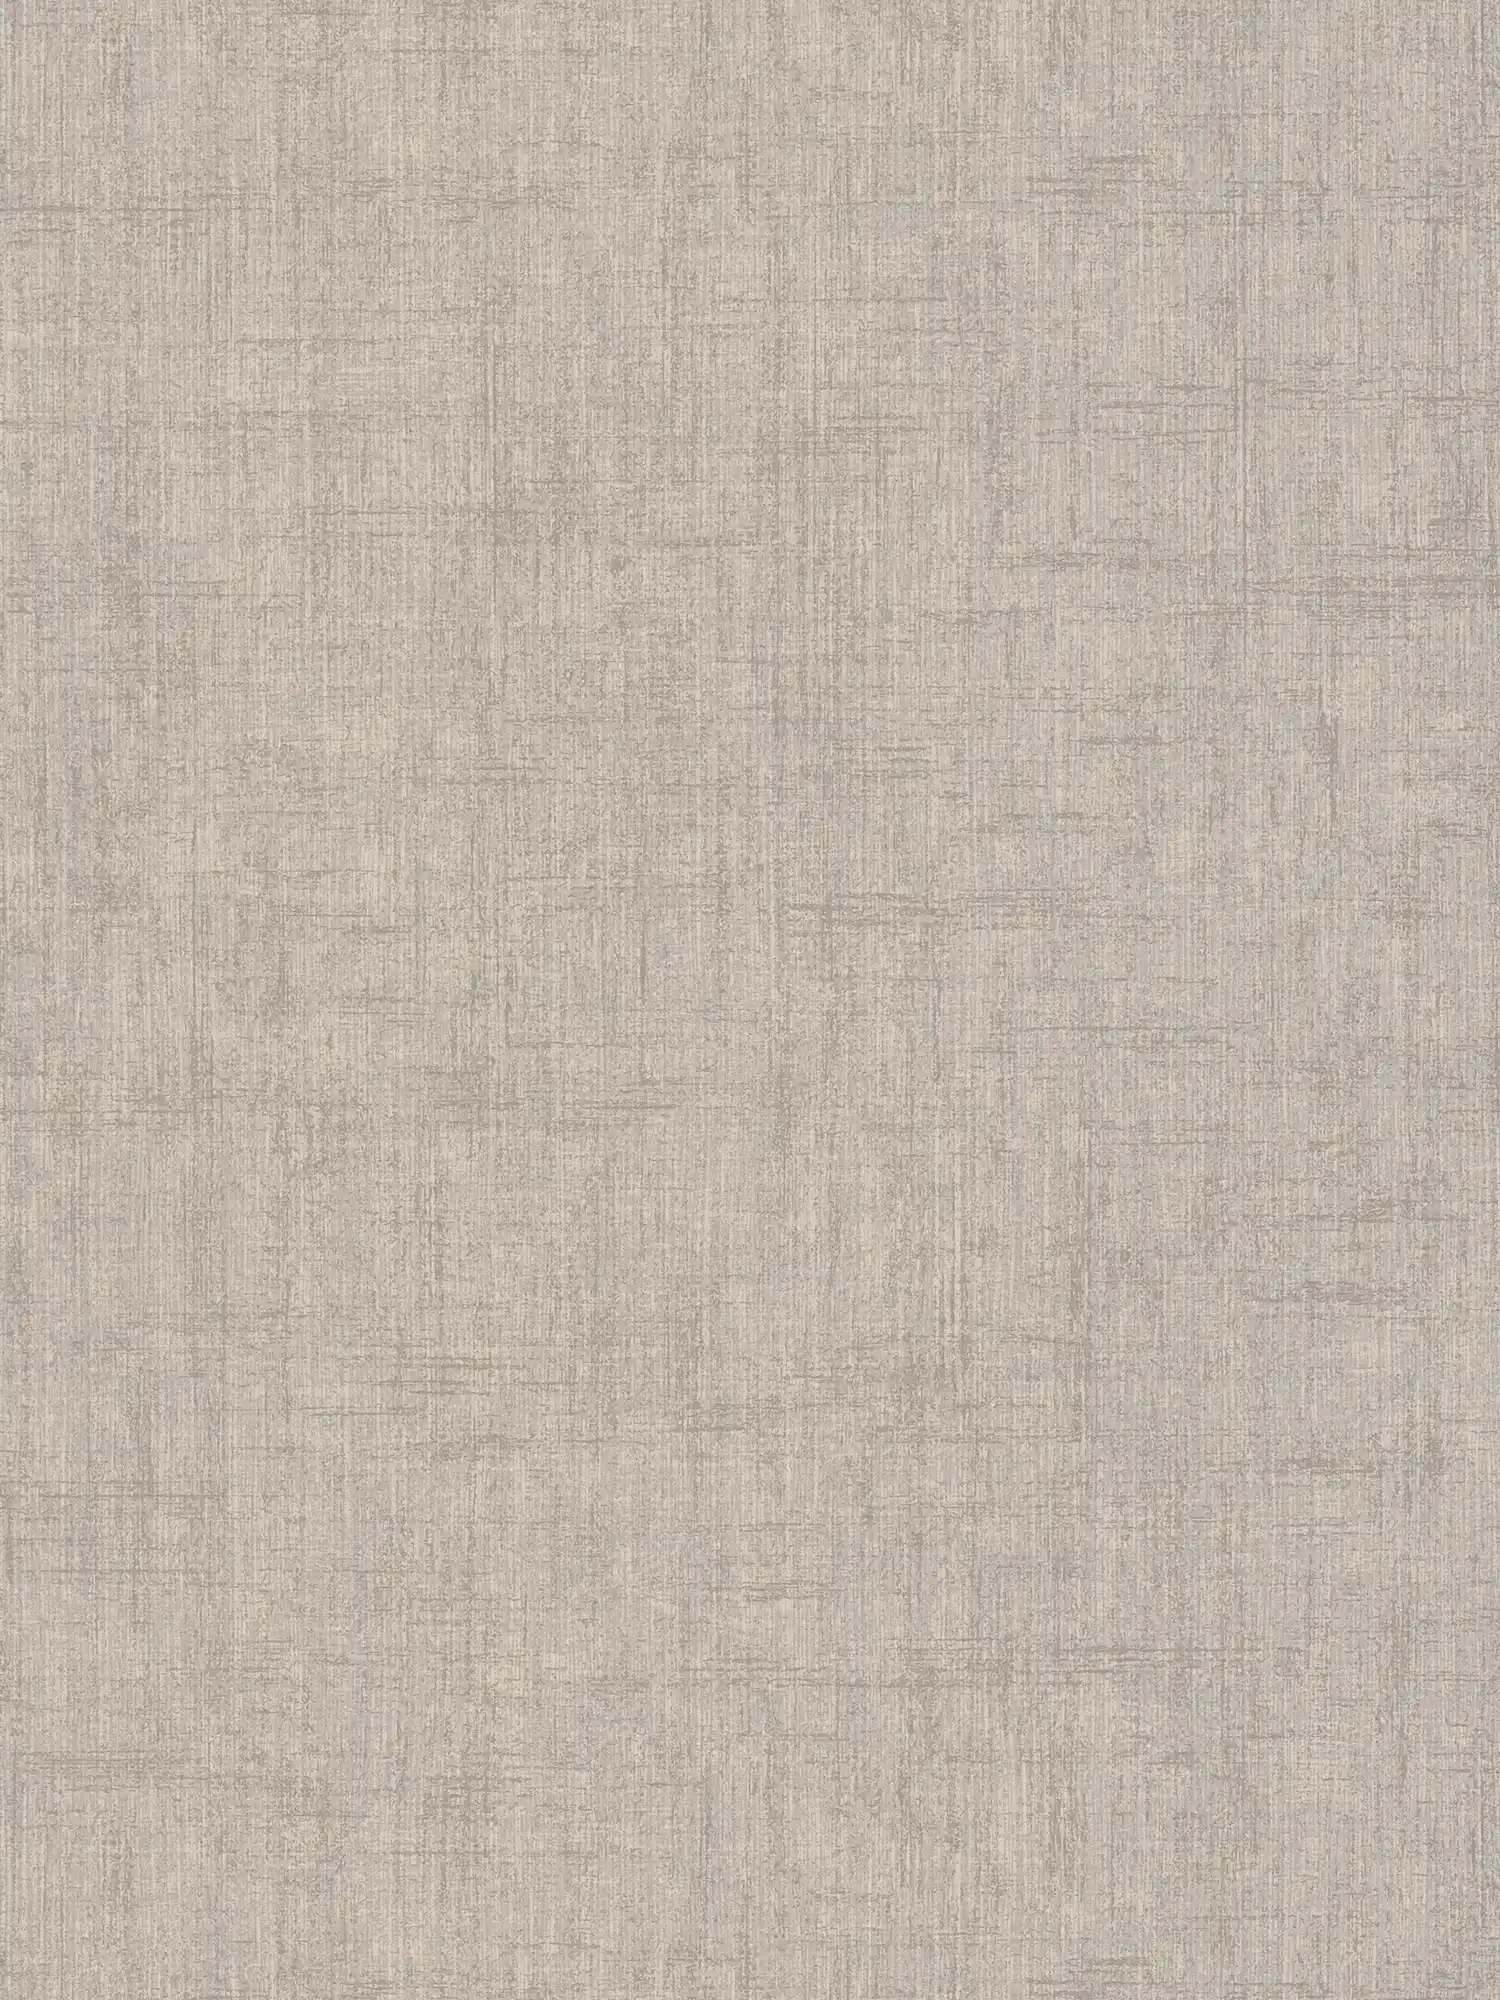 Greige wallpaper, coarse linen look - grey, beige
